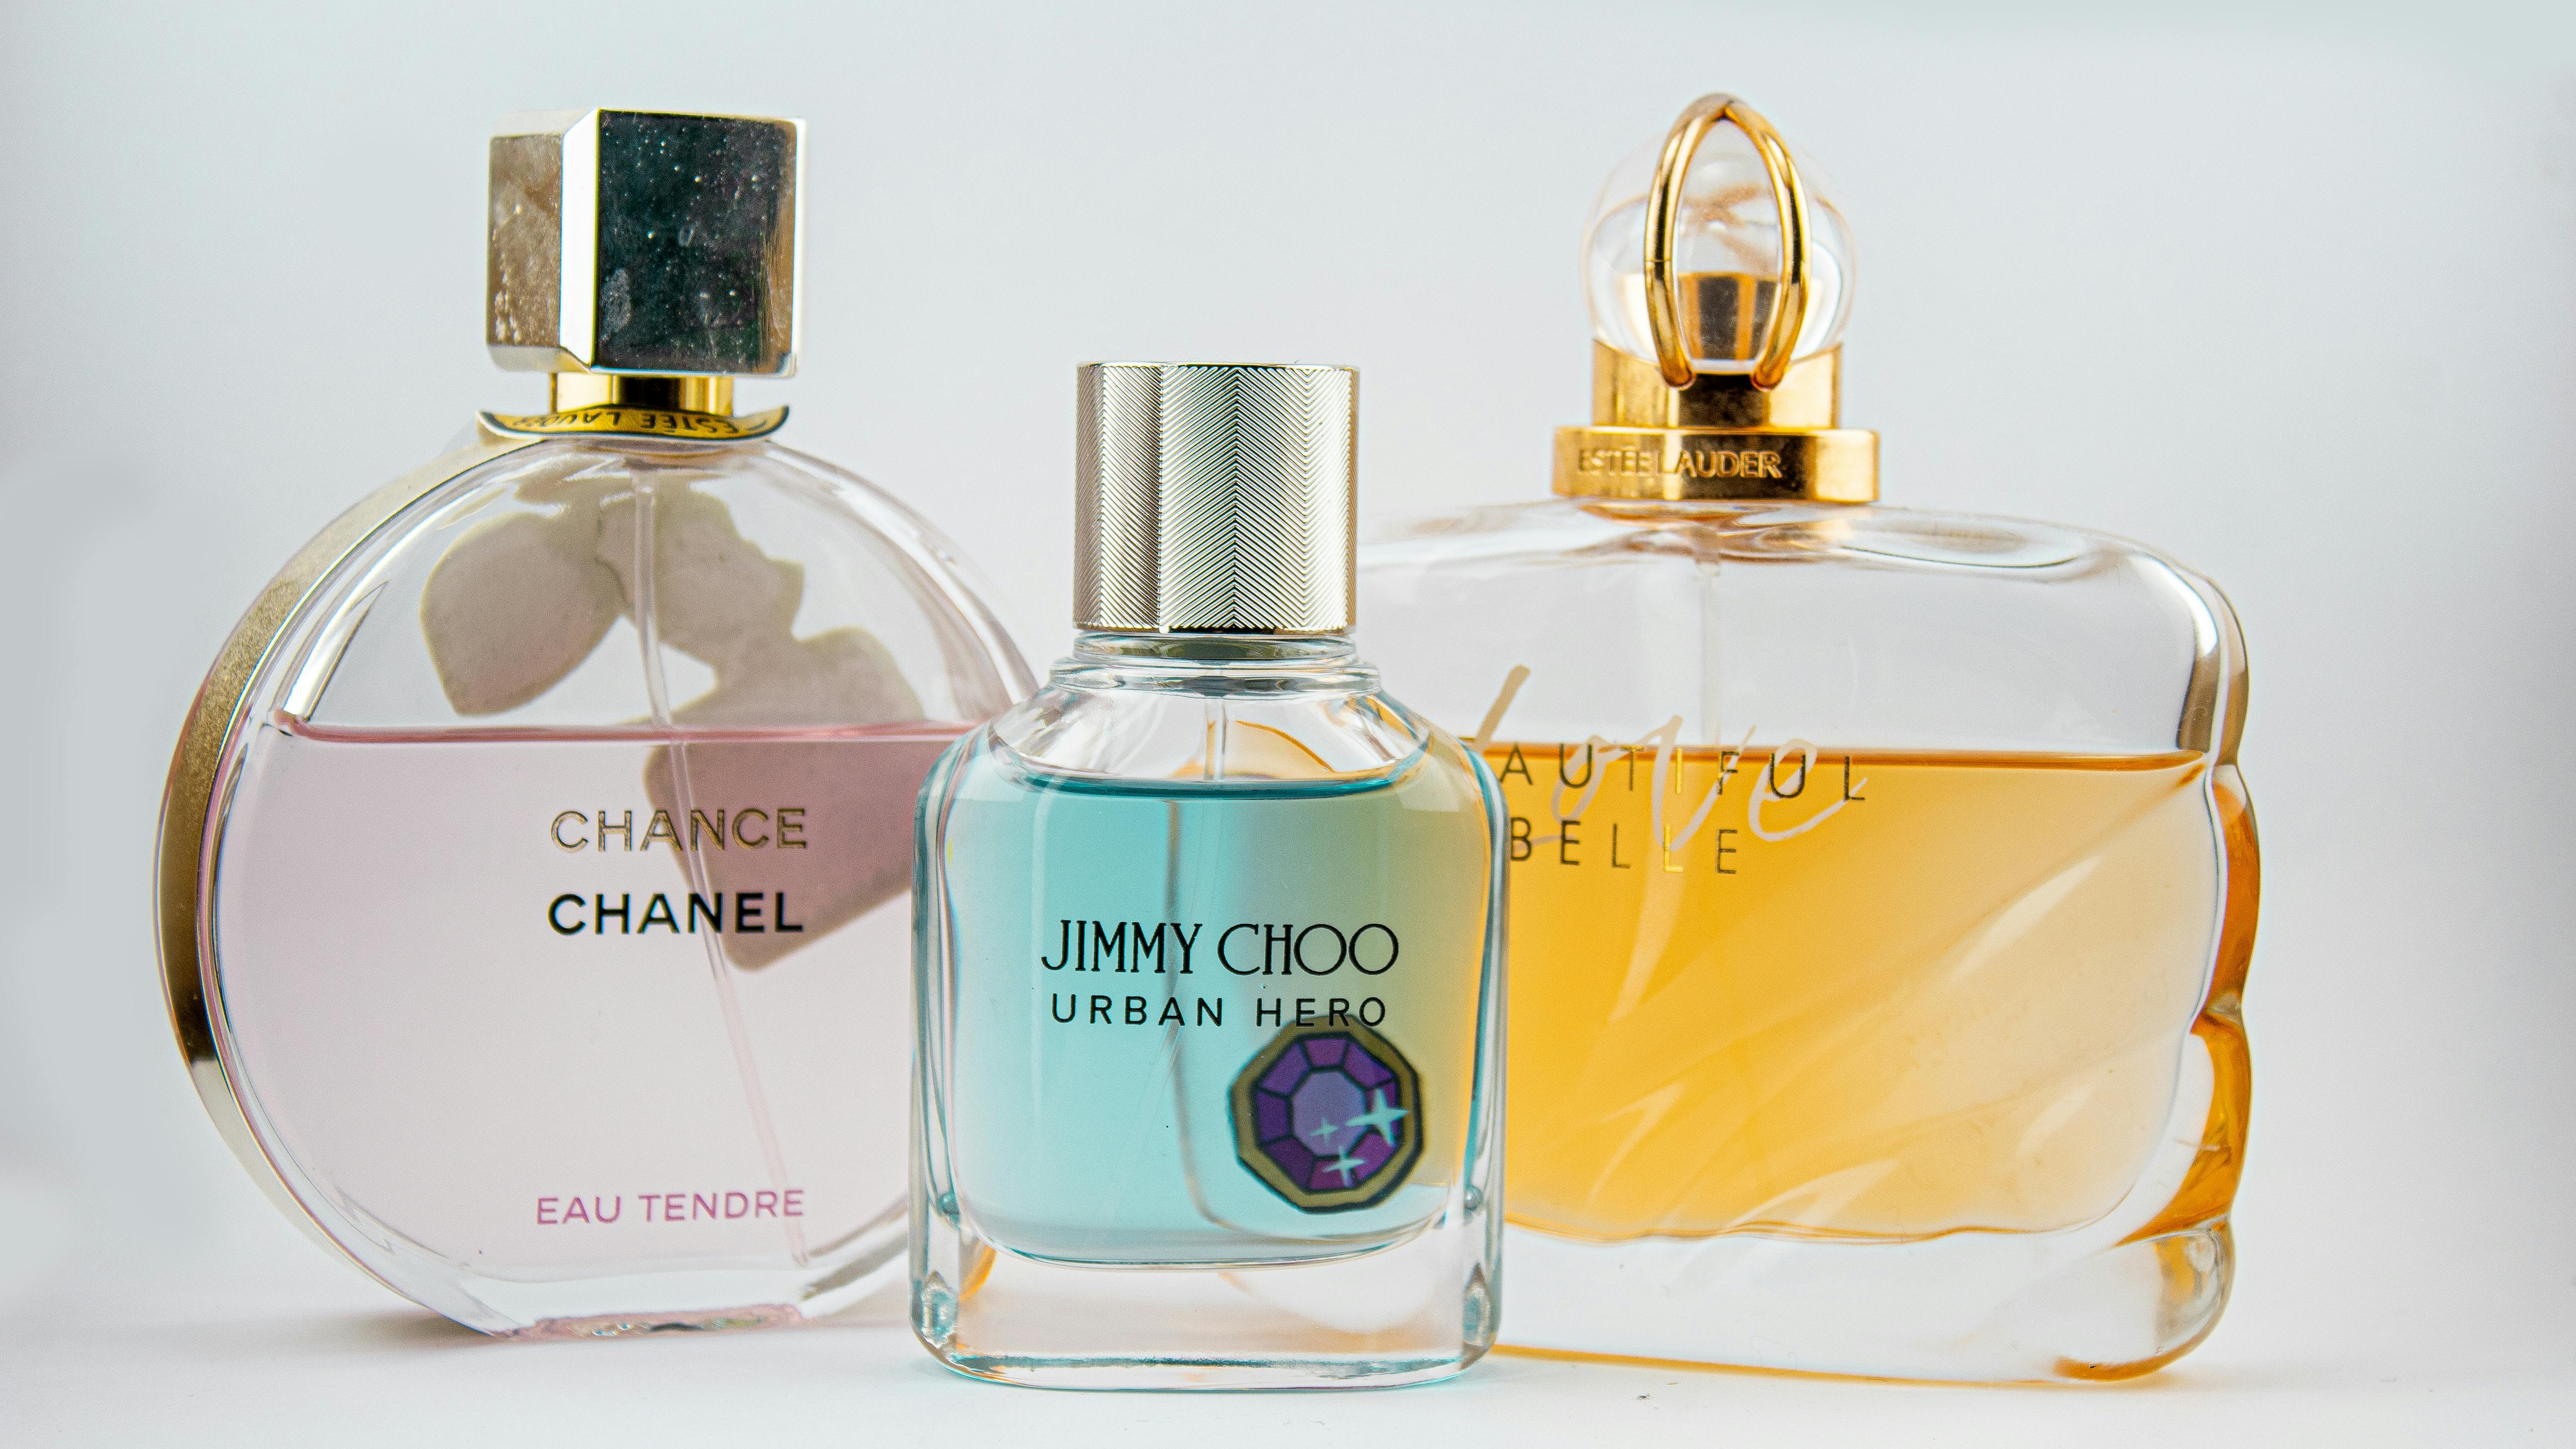 Chanel Paris Eua De Parfum Bottle · Free Stock Photo